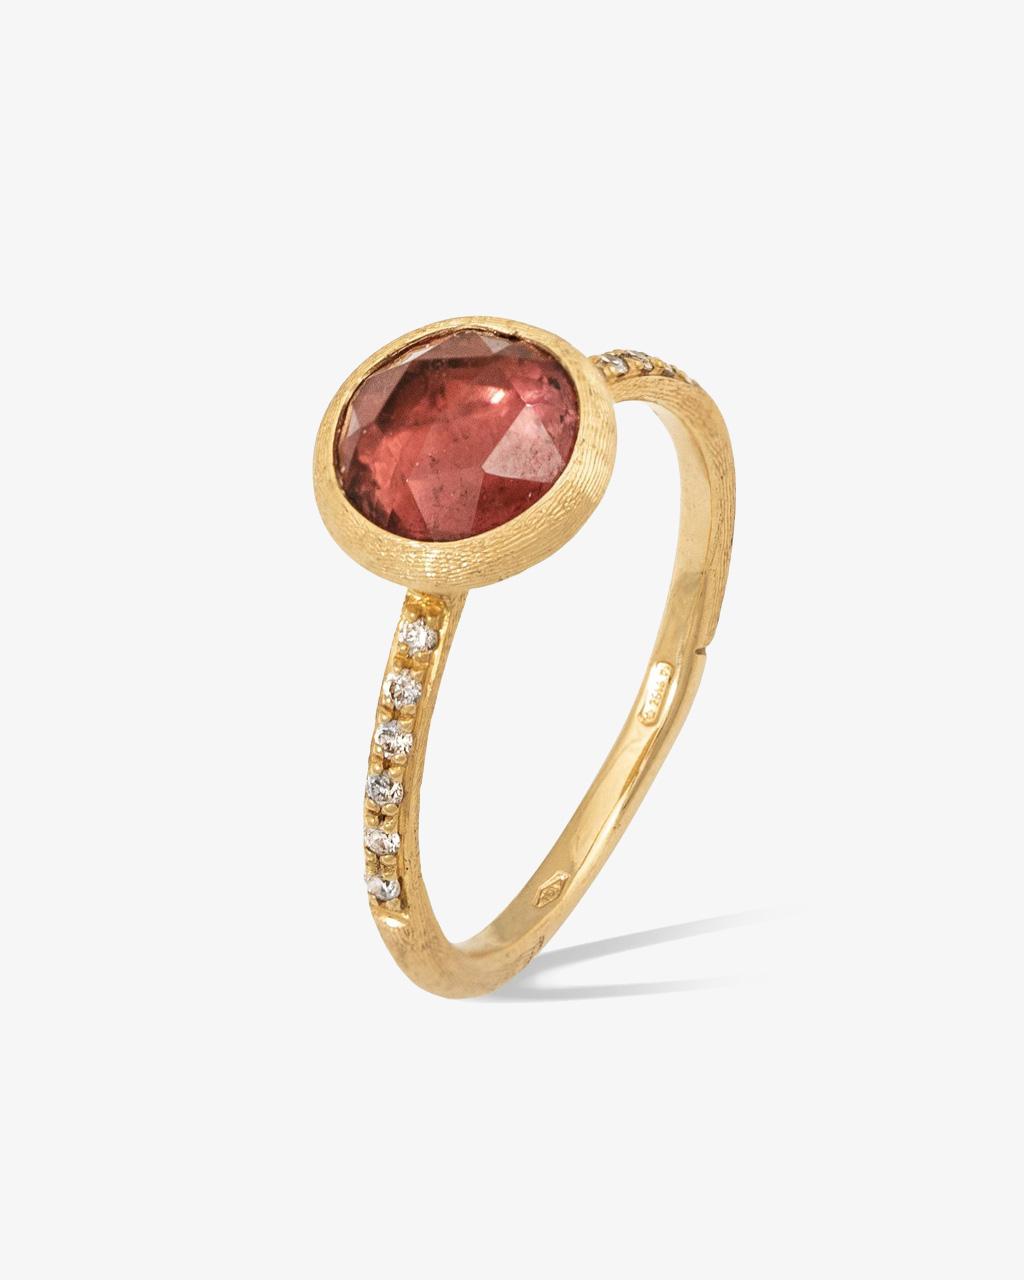 Marco Bicego 'Jaipur' Pink Tourmaline Ring